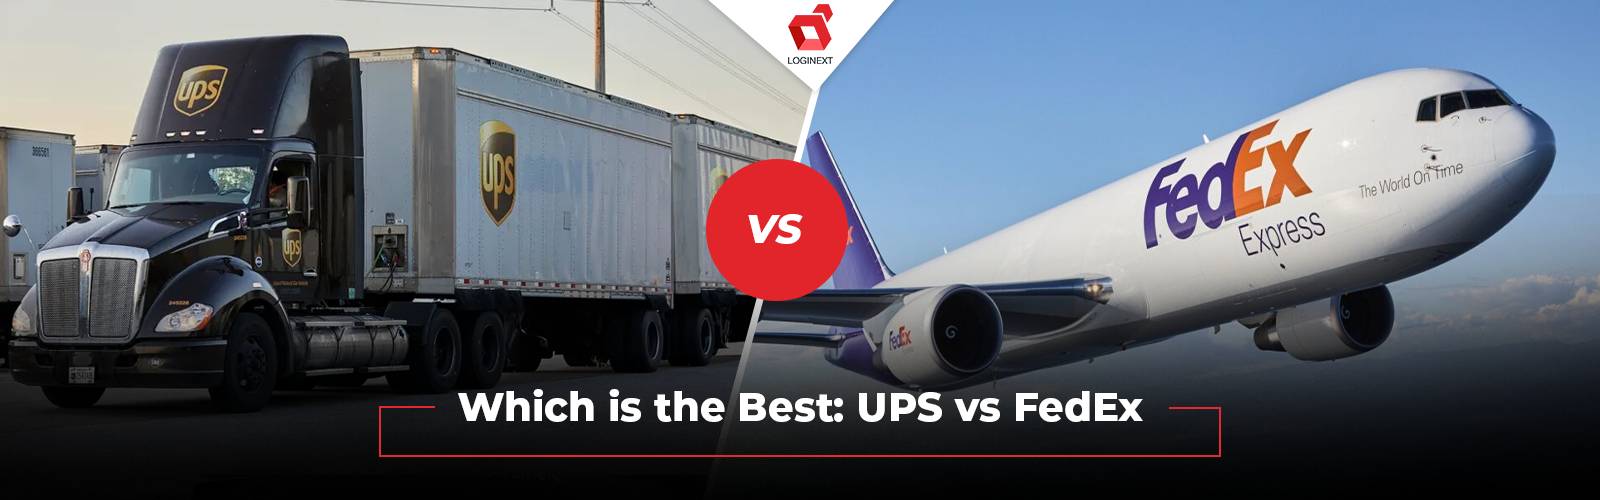 کون سا بہترین ہے: UPS بمقابلہ FedEx - ایک تفصیلی موازنہ